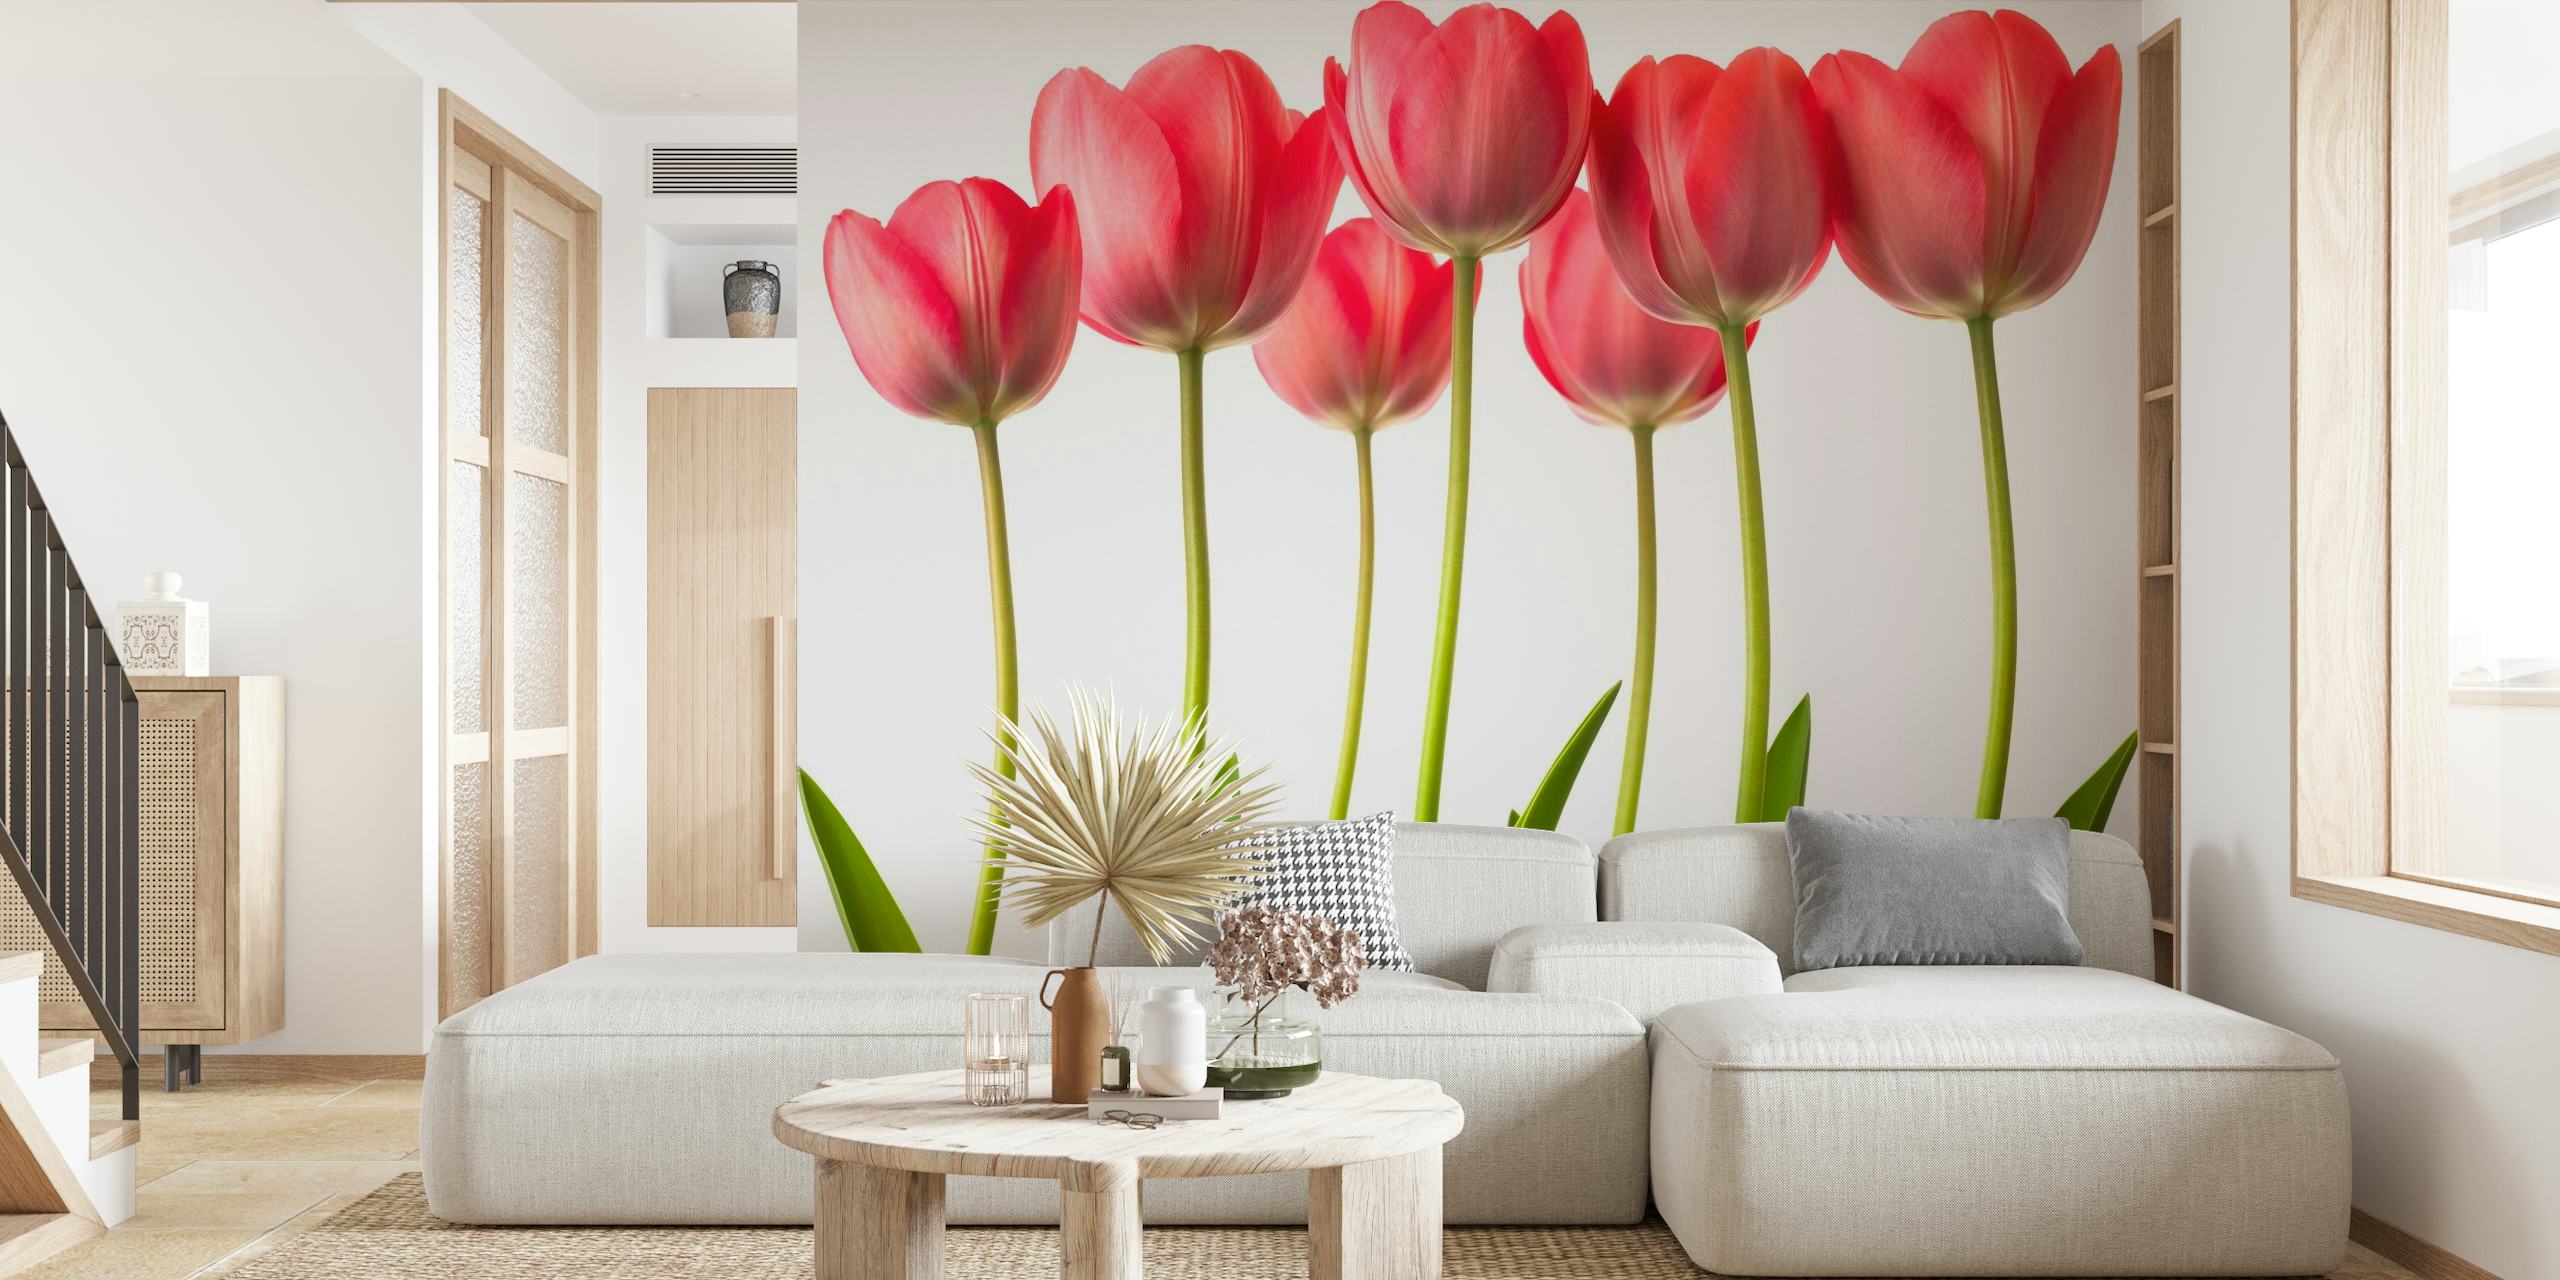 Growing Tulips papel pintado